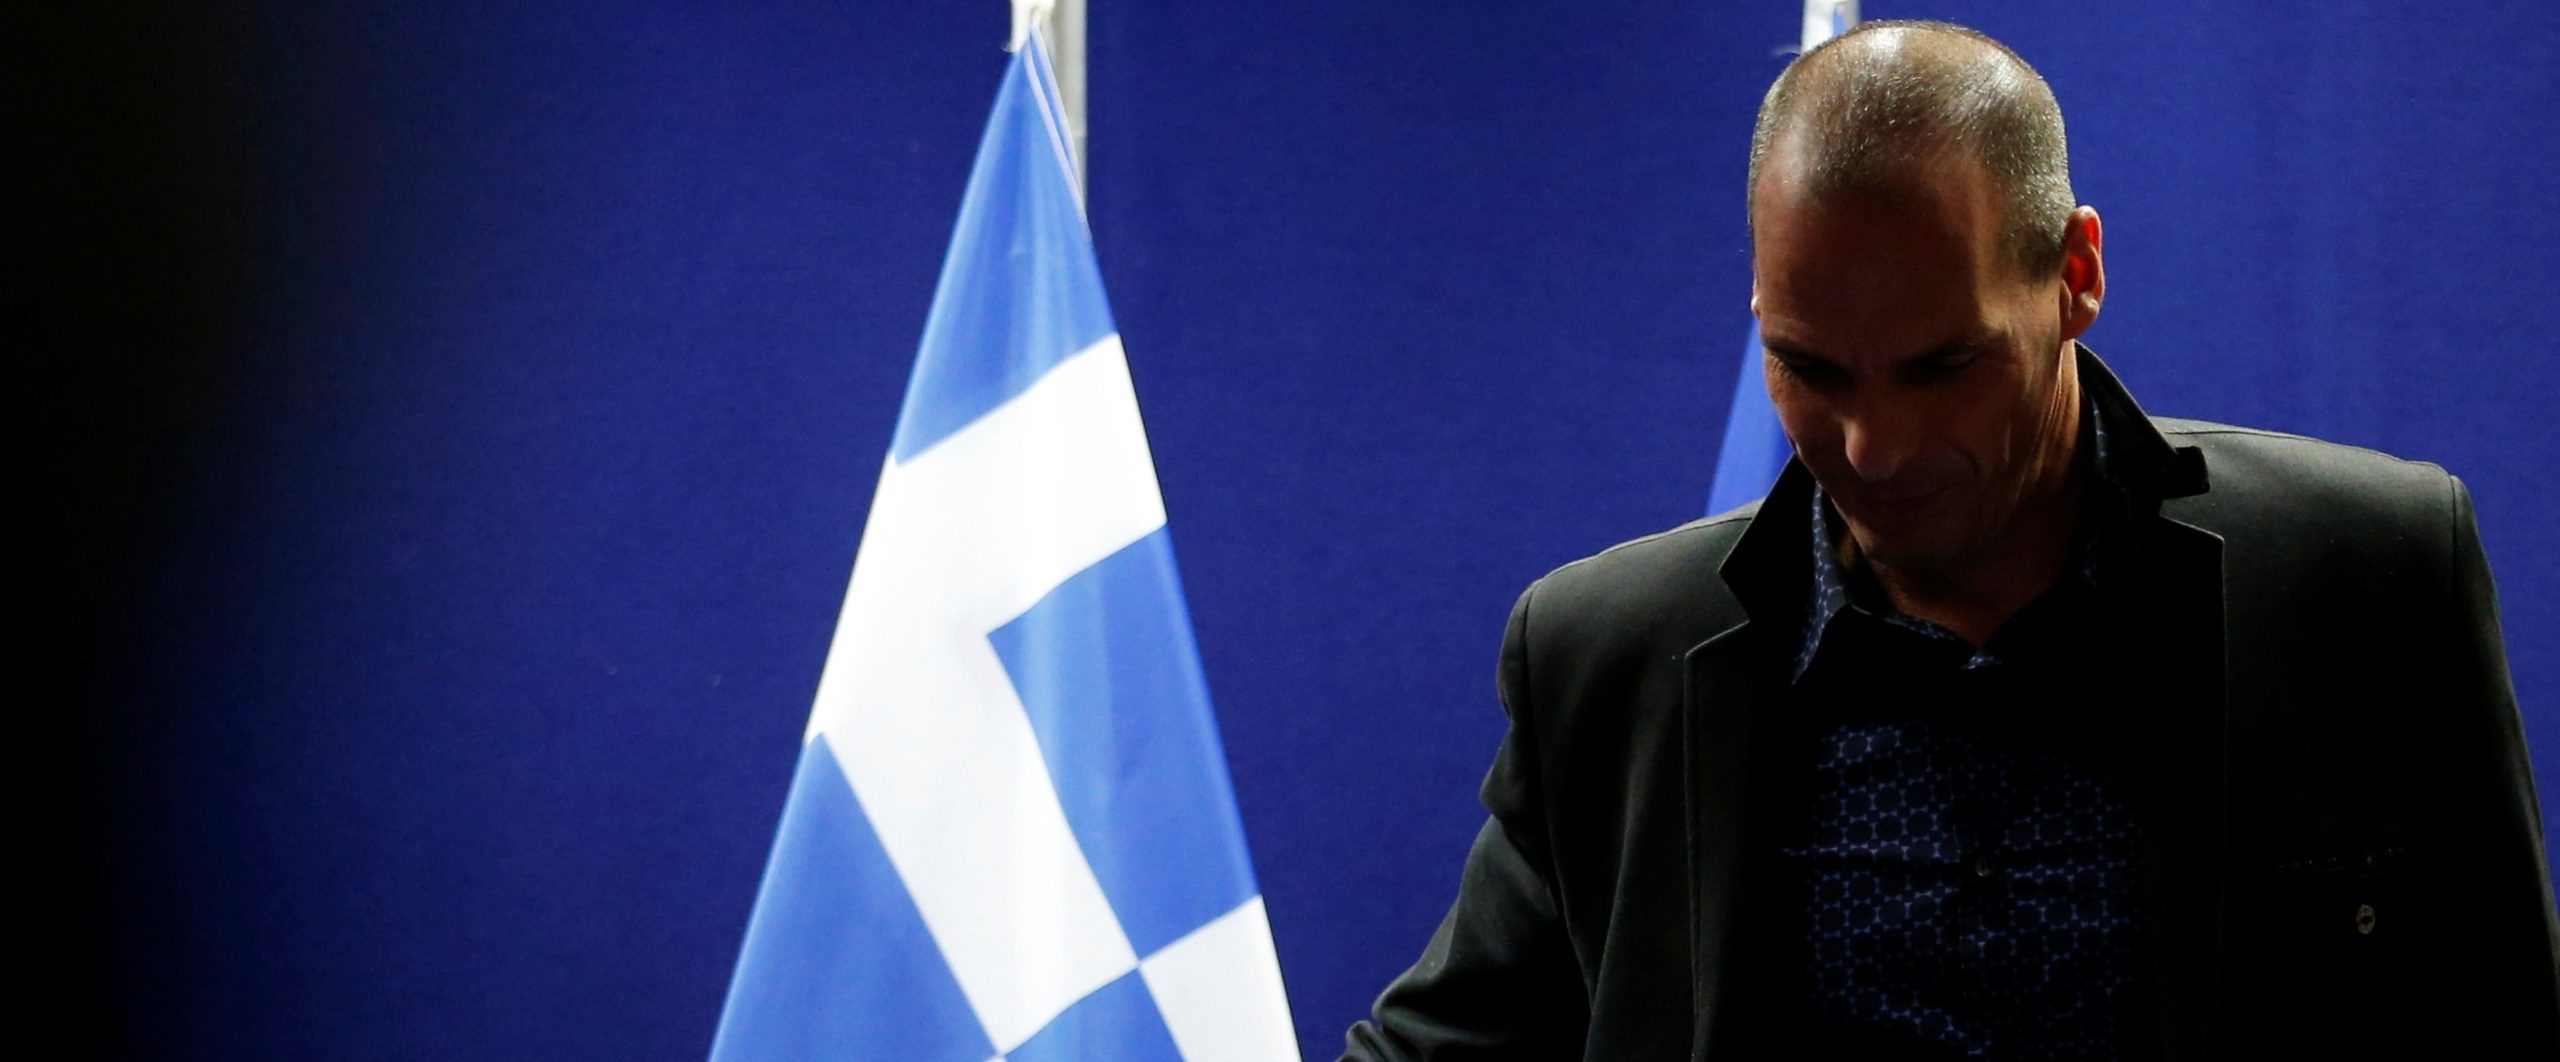 Γ.Βαρουφάκης: «Ο Α.Τσίπρας μου είπε το 2015 ότι θα μας ανέτρεπαν με πραξικόπημα» – Πλήρης επιβεβαίωση του pronews.gr